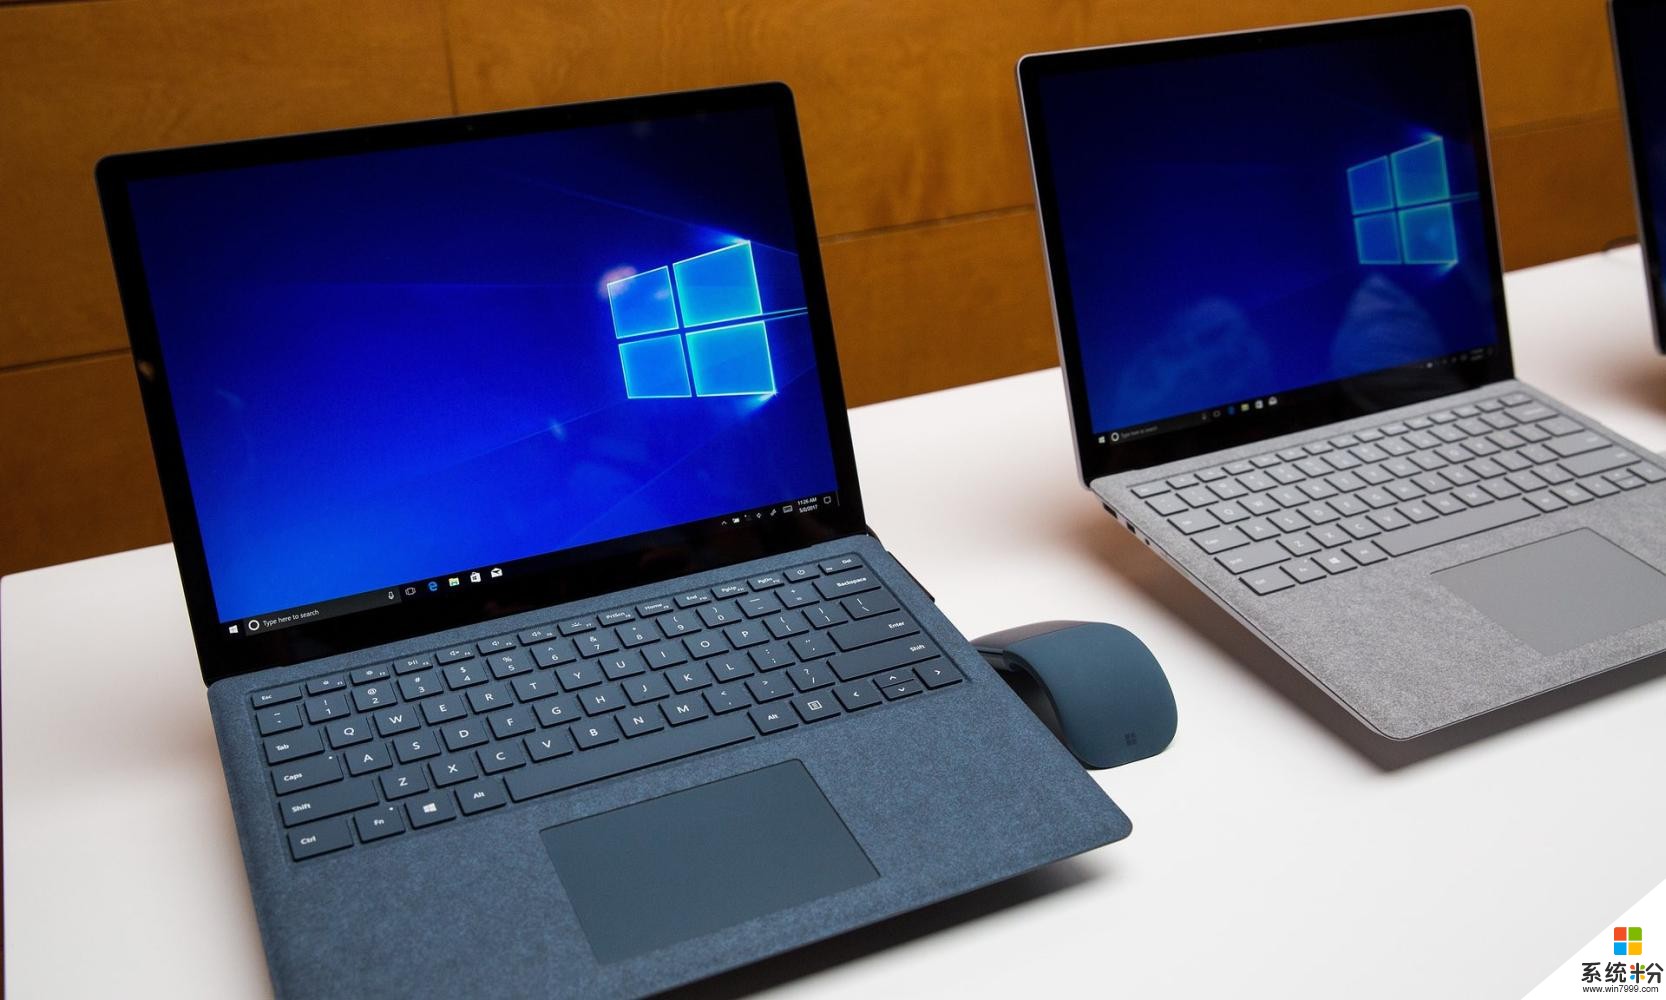 微软推出Surface笔记本电脑和Windows 10 S, 以竞争MacBook Pro(4)